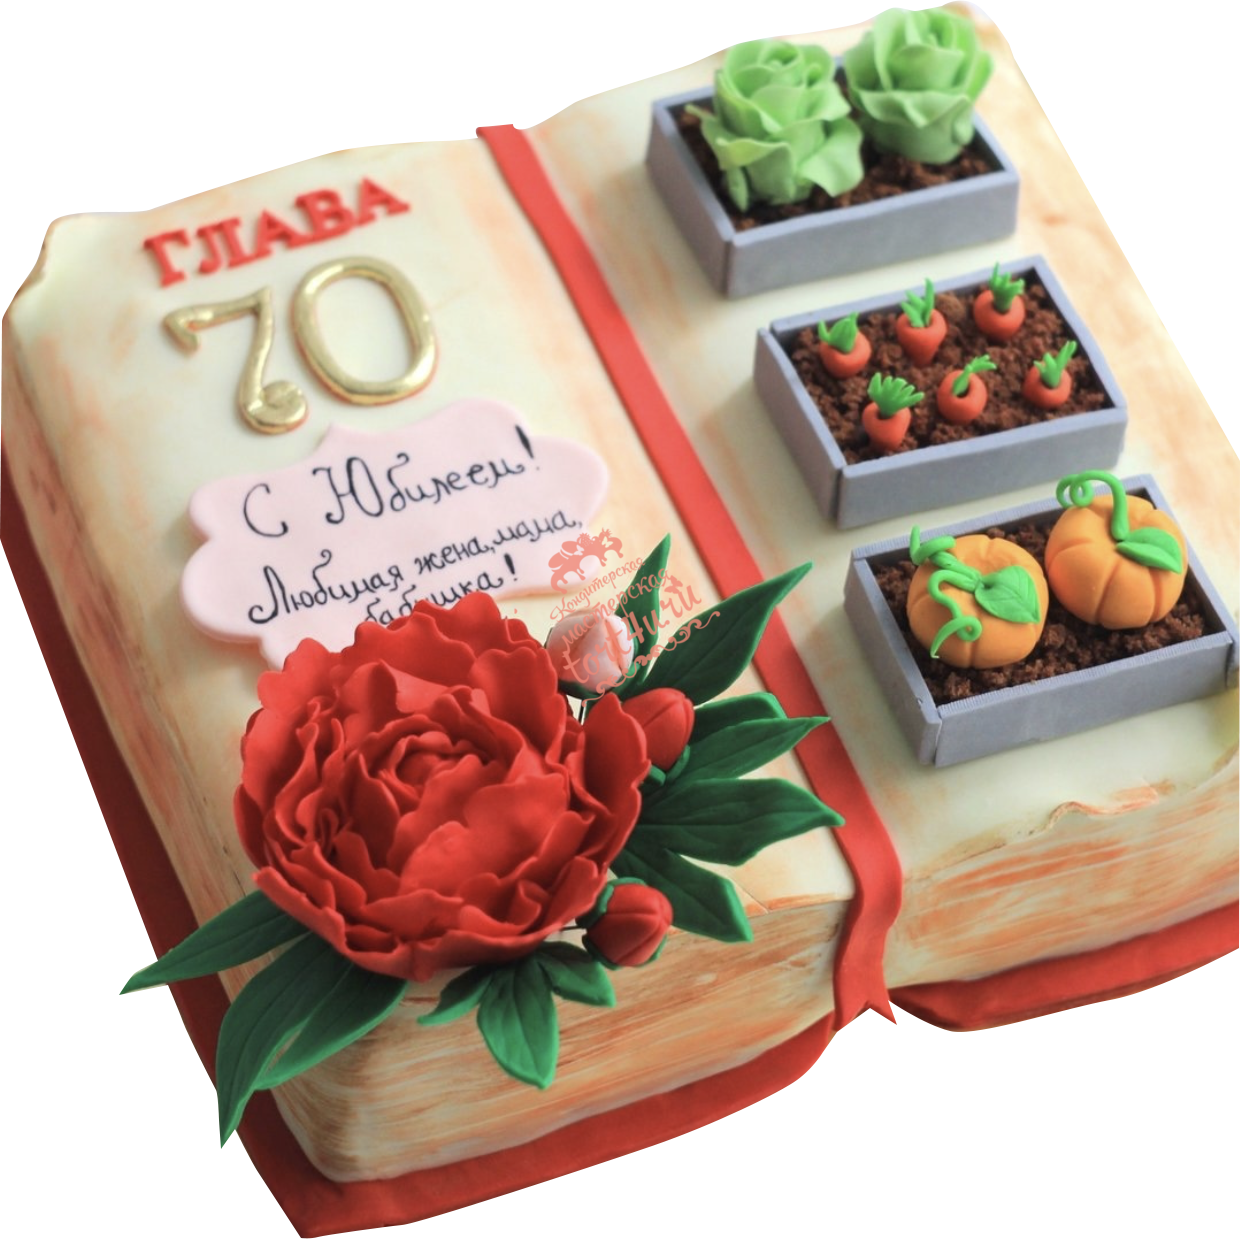 Торт на 70 лет. Торт на юбилей 70 лет. Торт на день рождения женщине 70 лет. Торт на юбилей 60 лет. Подарок маме торт